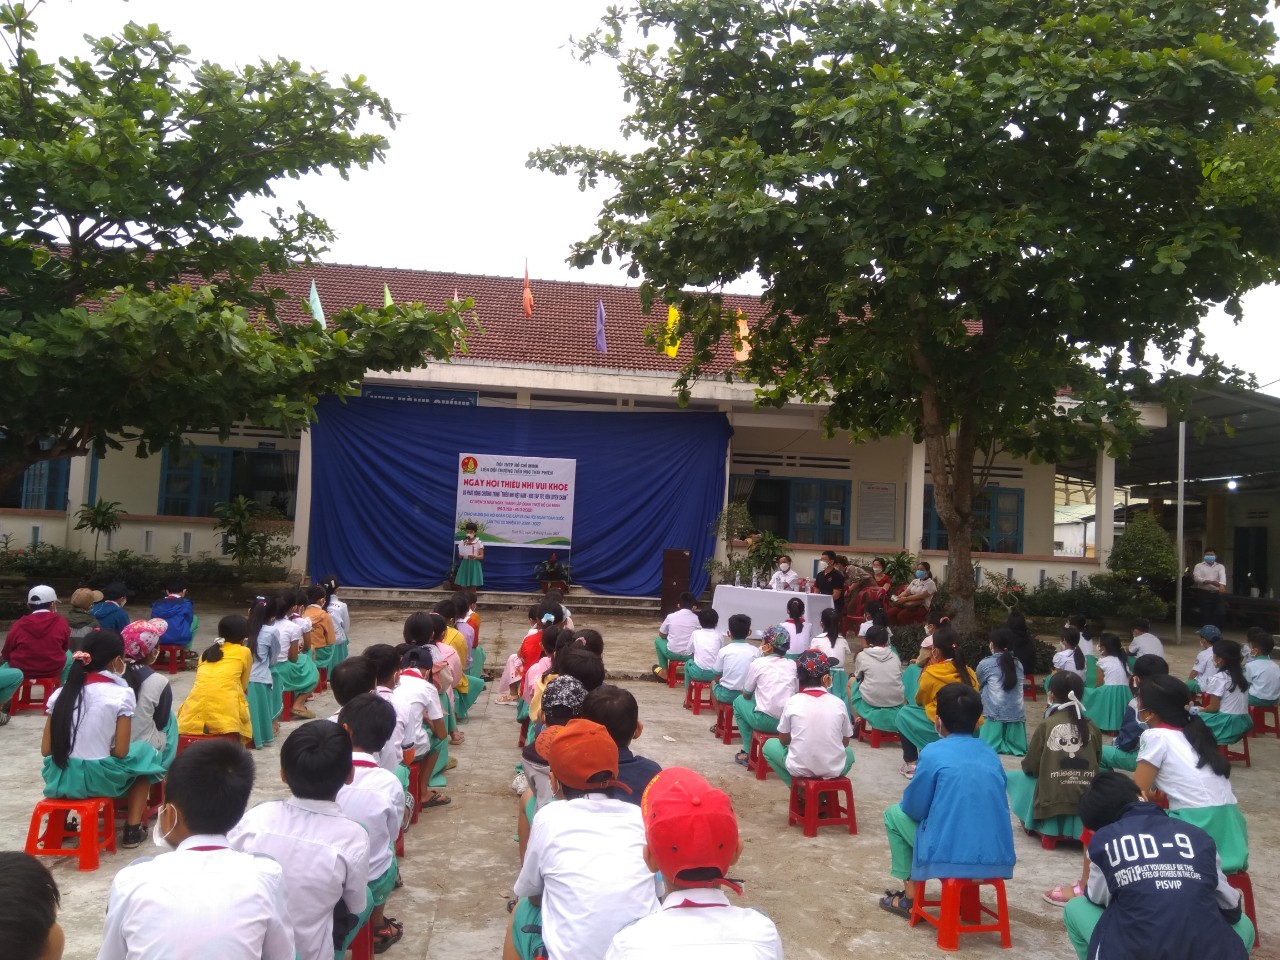 Liên đội Trường TH Thái Phiển tổ chức ngày hội "Thiếu nhi vui khỏe" và phát động chương trình “Thiếu nhi Việt Nam - Học tập tốt, rèn luyện chăm”